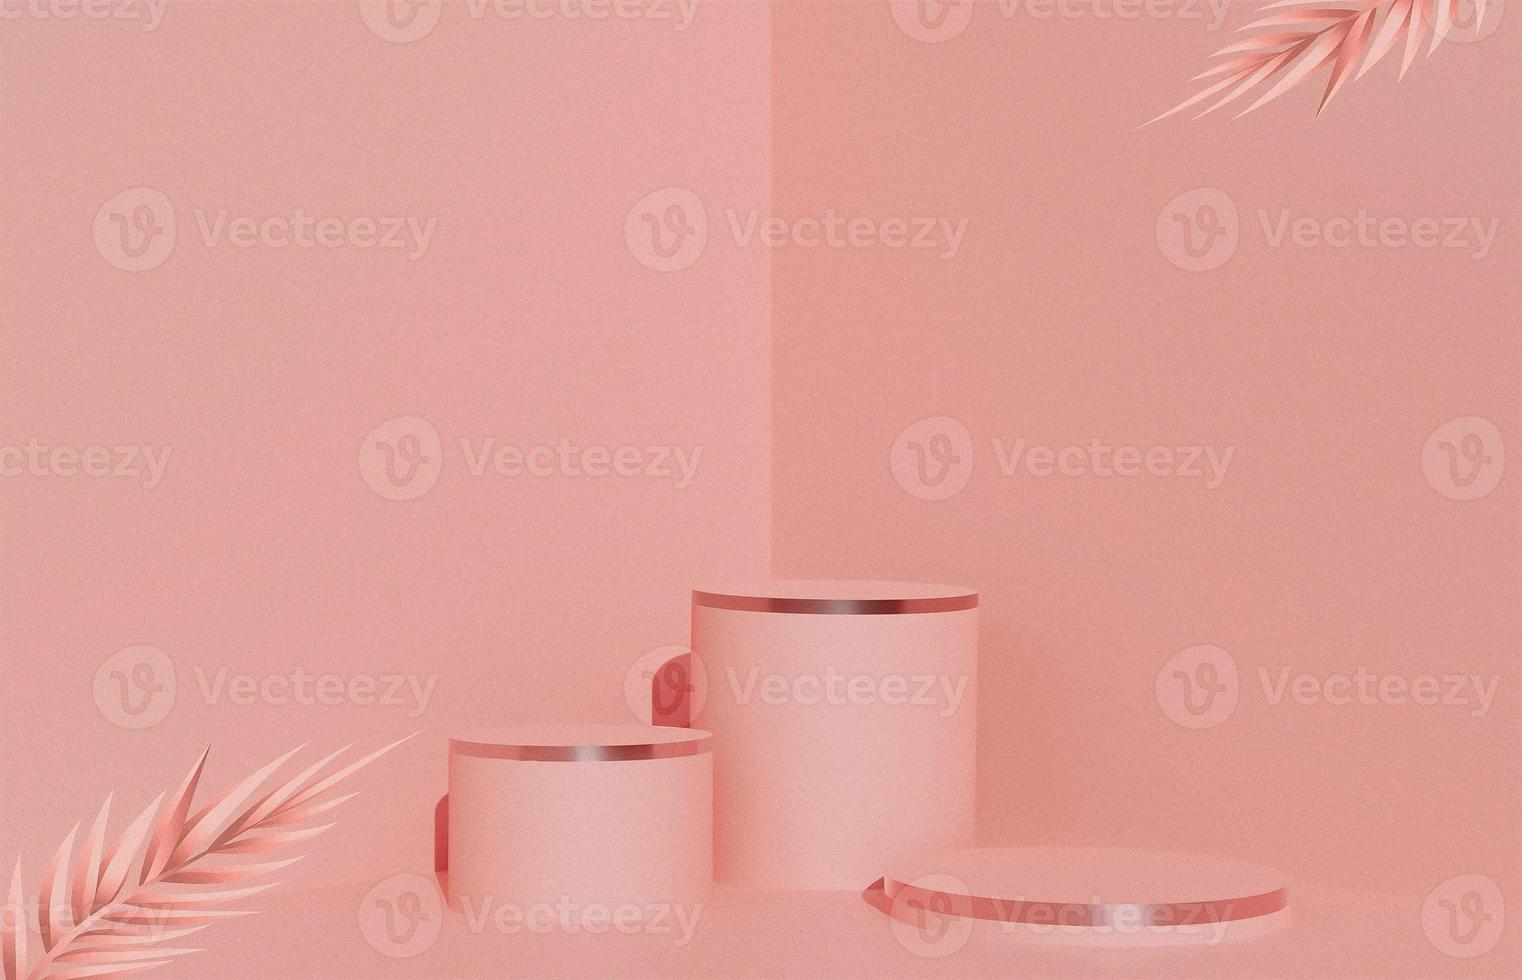 podium de cylindre à 3 étages rose rouge pour la présentation d'affichage de produits cosmétiques ou de beauté avec image de rendu 3d de feuilles. photo